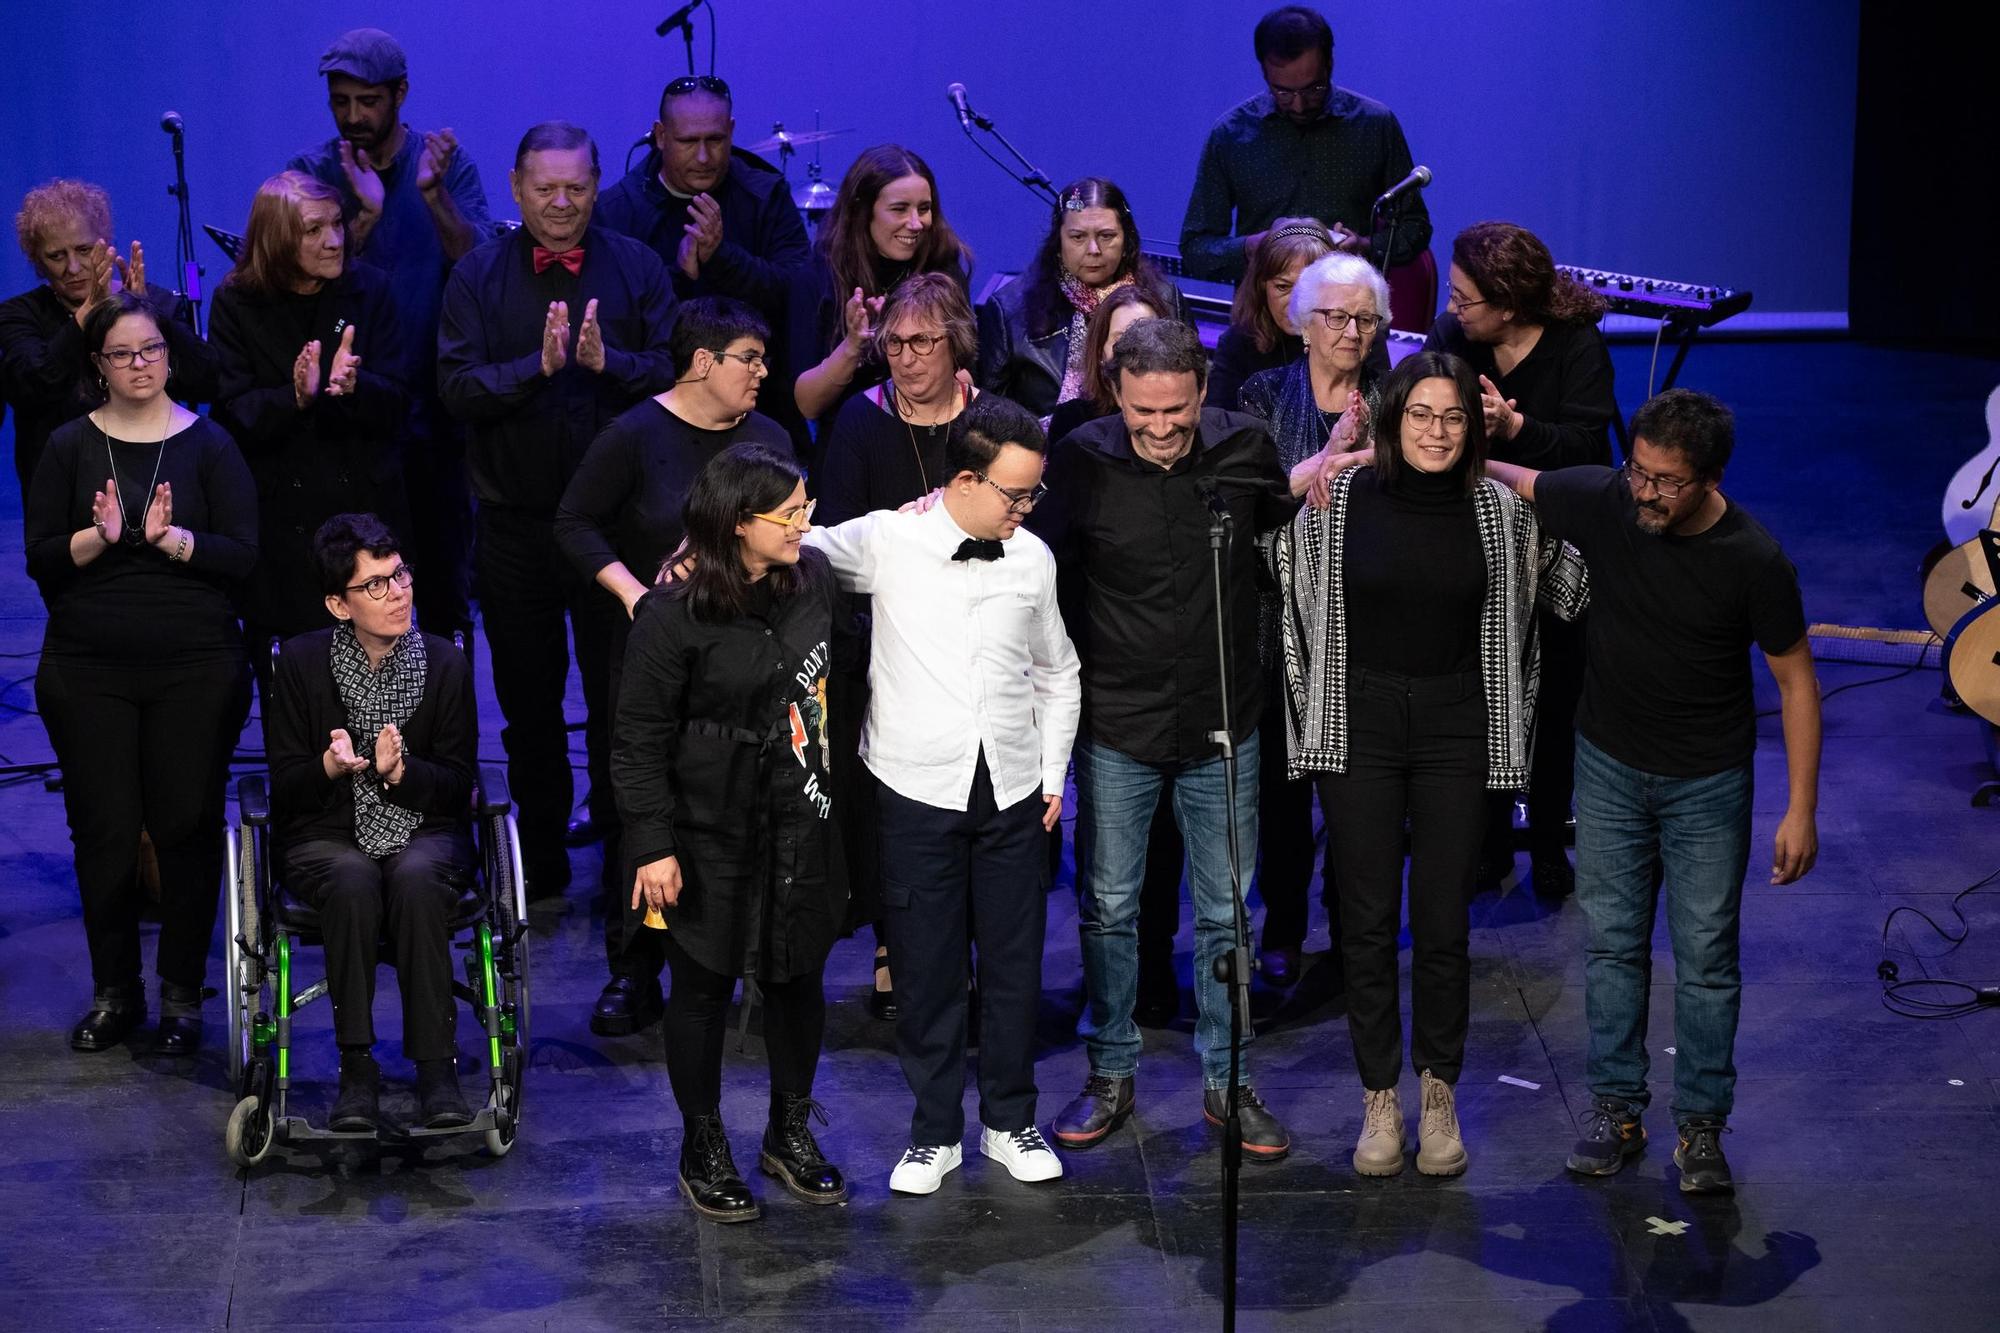 GALERÍA | Las mejores imágenes del espectáculo “Música Sin barreras” en el Teatro Principal de Zamora